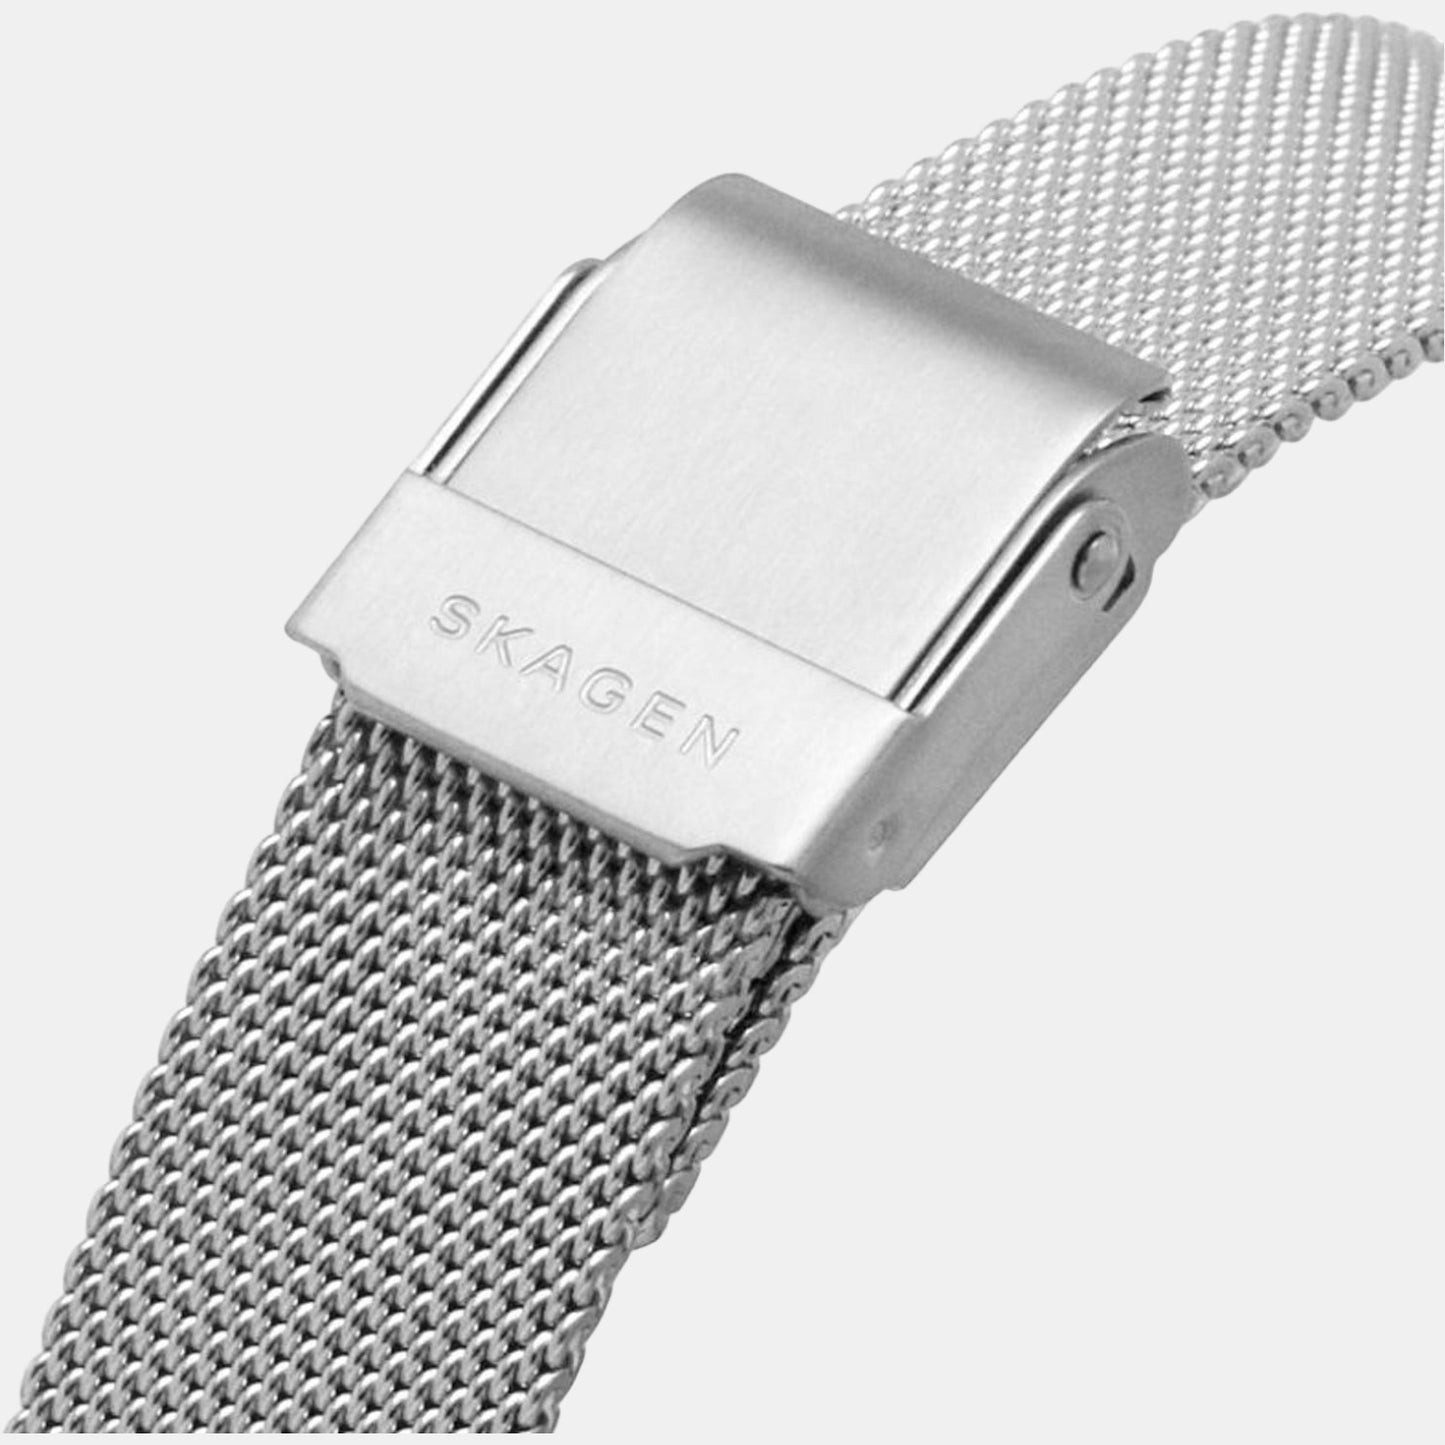 skagen-stainless-steel-white-analog-female-watch-skw3038